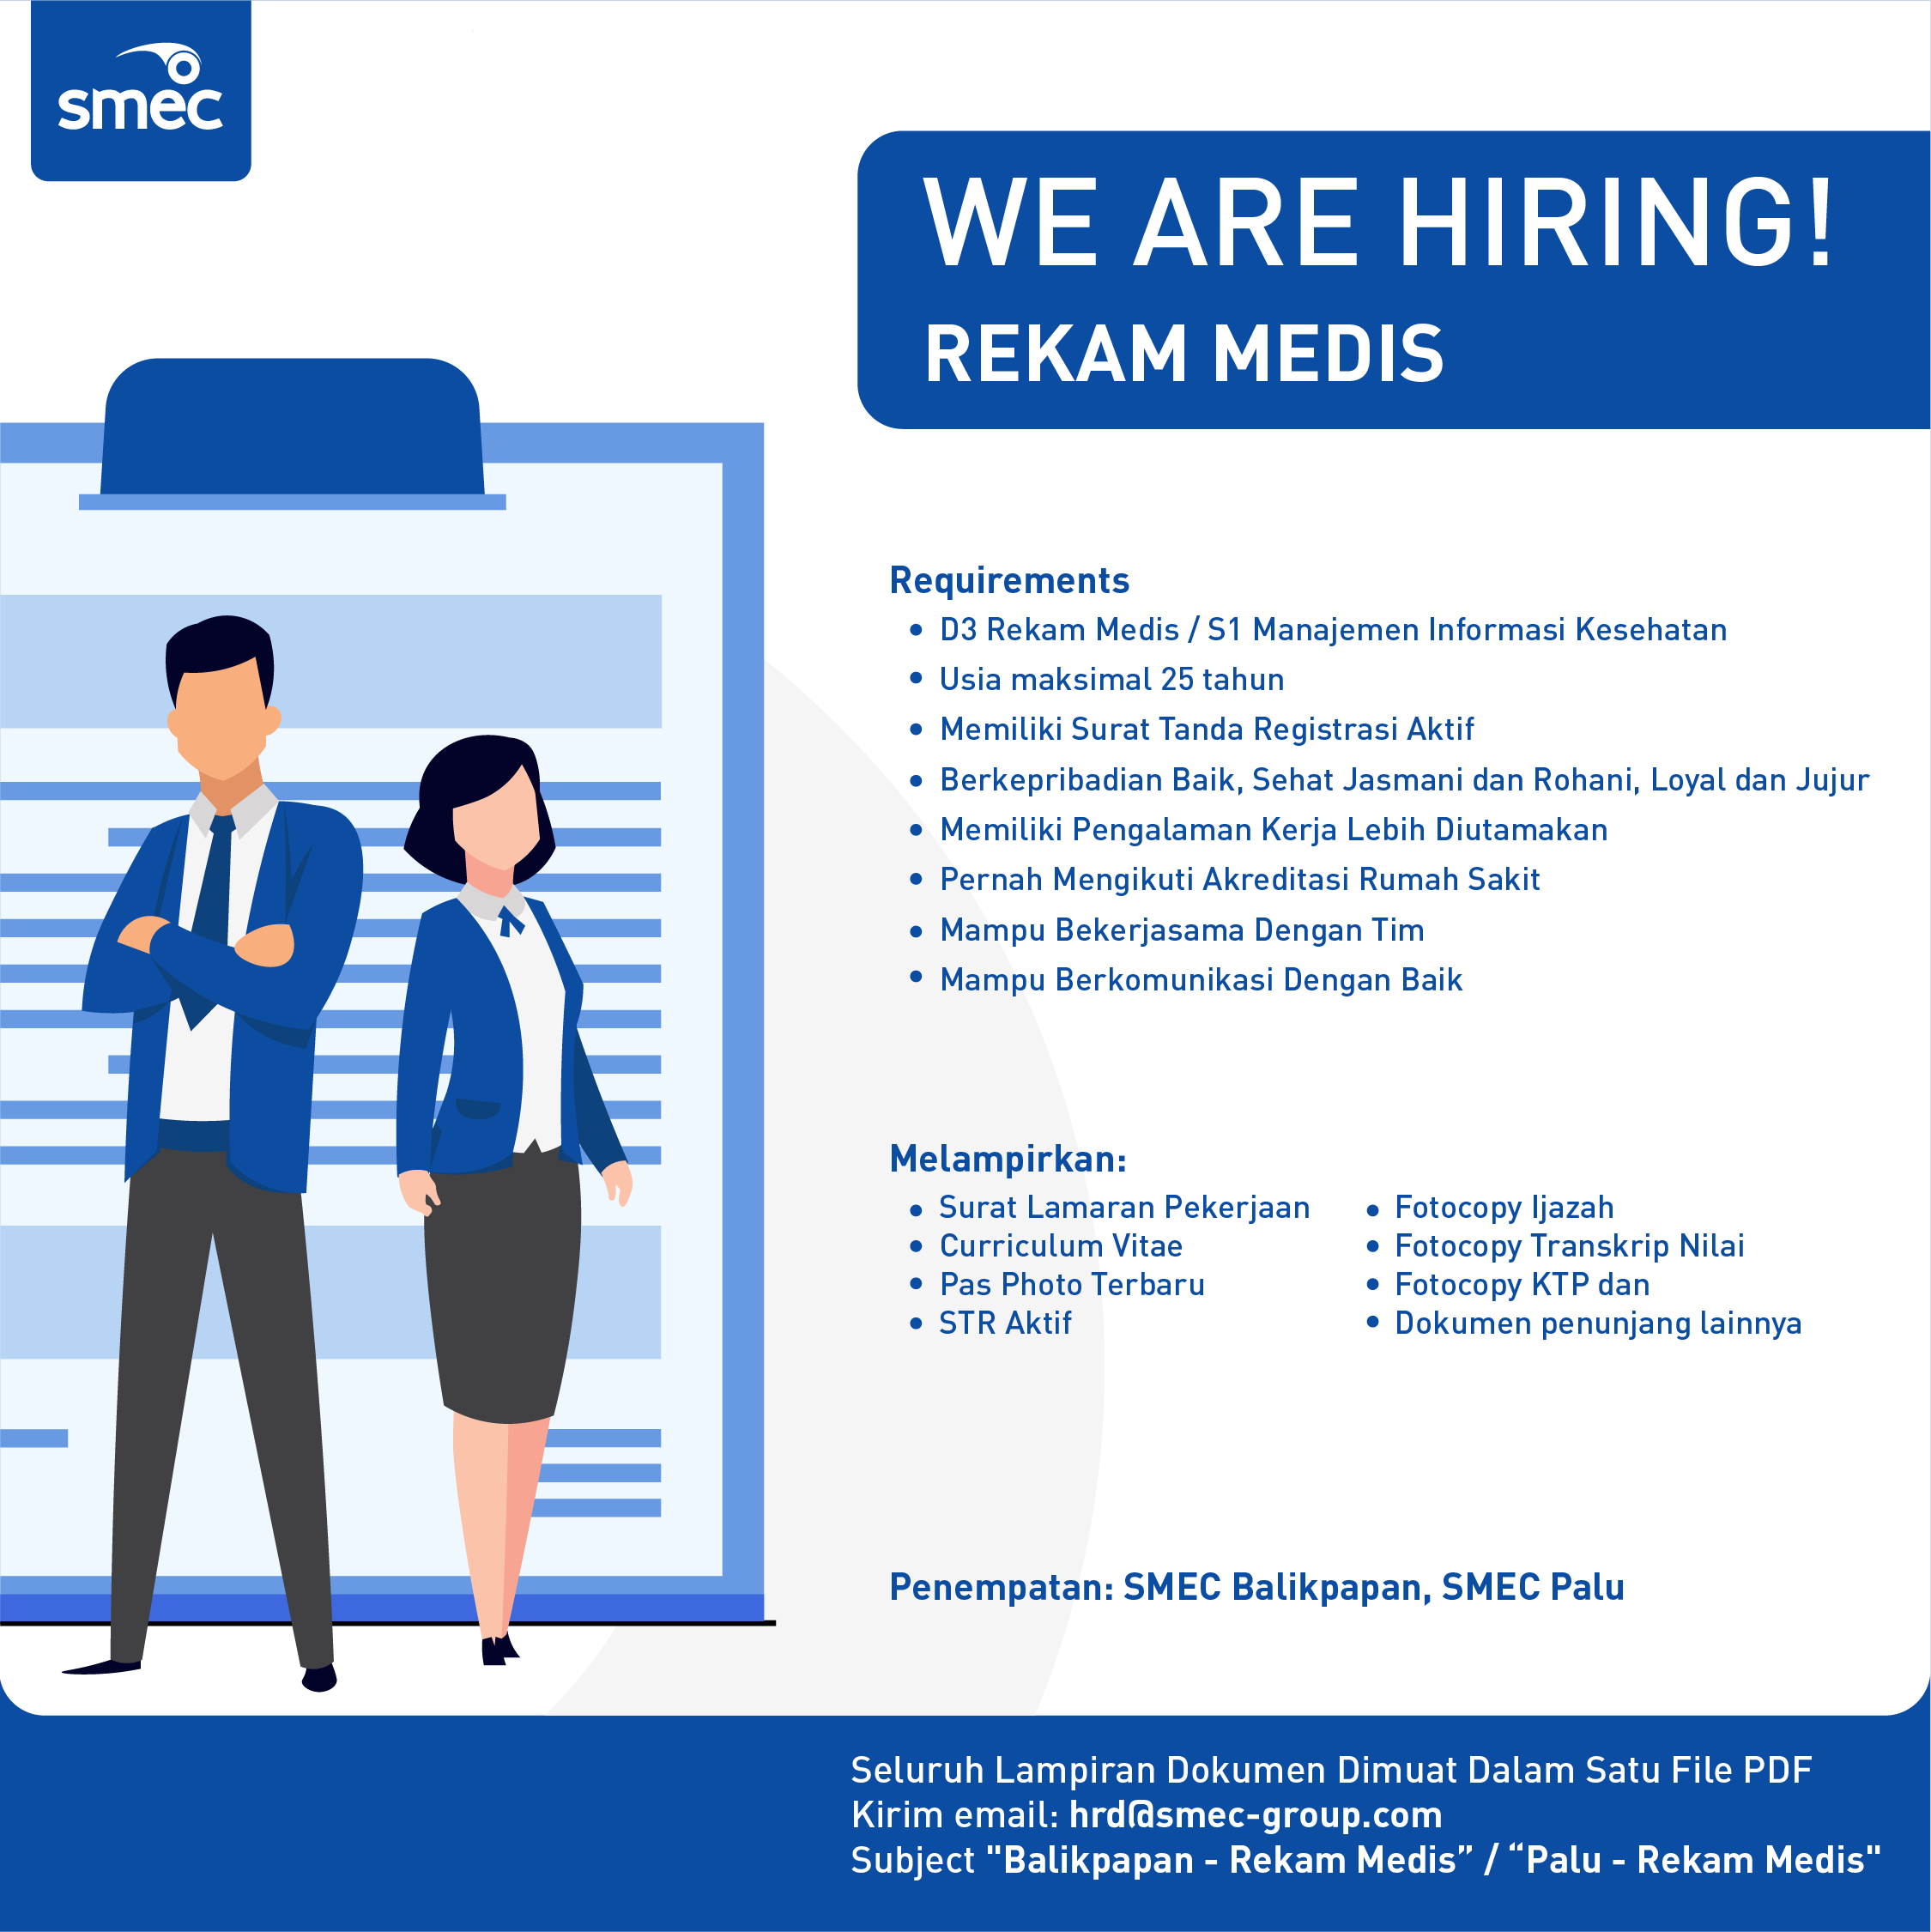 SMEC job hiring - rekam medis-revisi--04.png